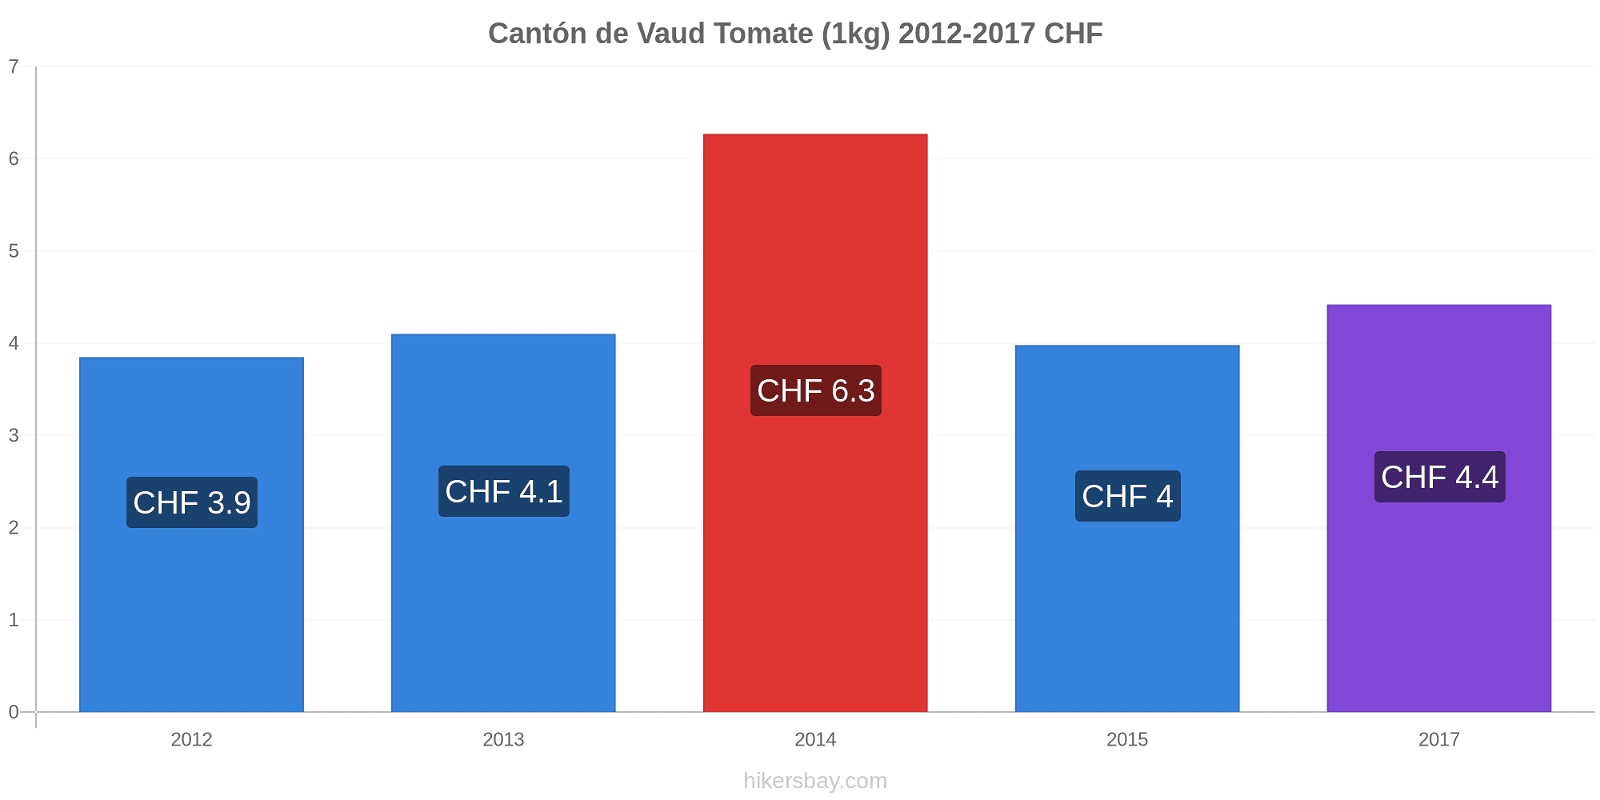 Cantón de Vaud cambios de precios Tomate (1kg) hikersbay.com